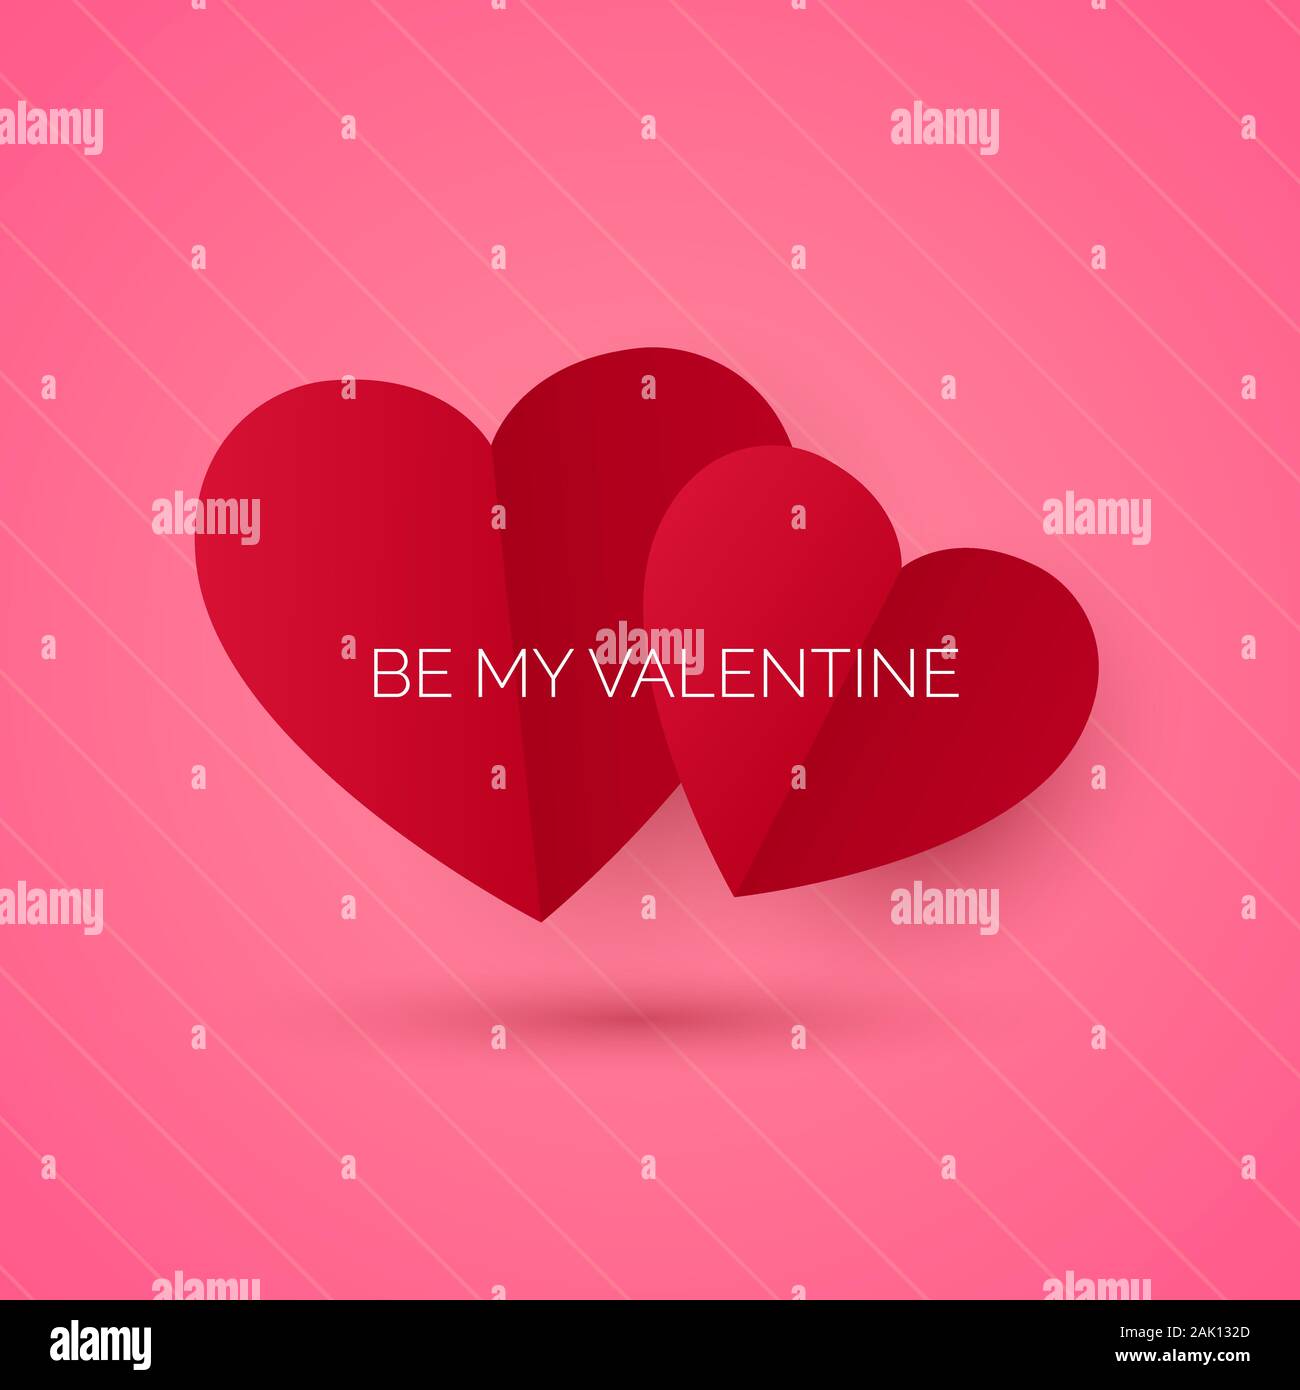 Valentinstag Grusskarten oder Einladung. Holiday Banner mit roten Herzen. Februar 14 Tag der Liebe und Romantik. My Valentine Karte sein. Vektor illust Stock Vektor